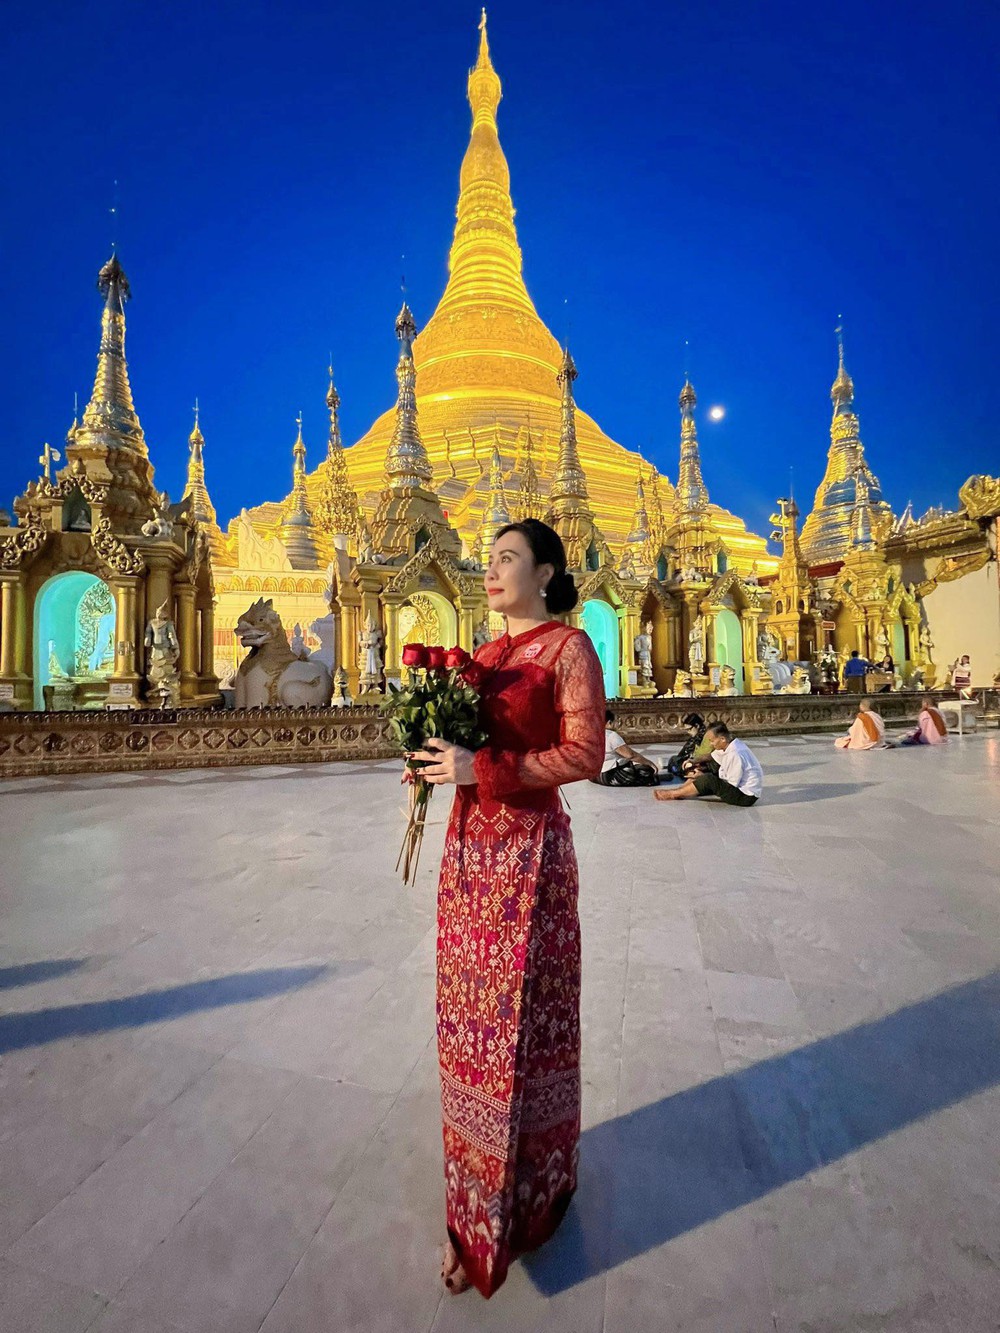 Hoa hậu Phan Kim Oanh trở lại Myanmar sau 7 tháng đăng quang, được truyền thông săn đón - Ảnh 7.